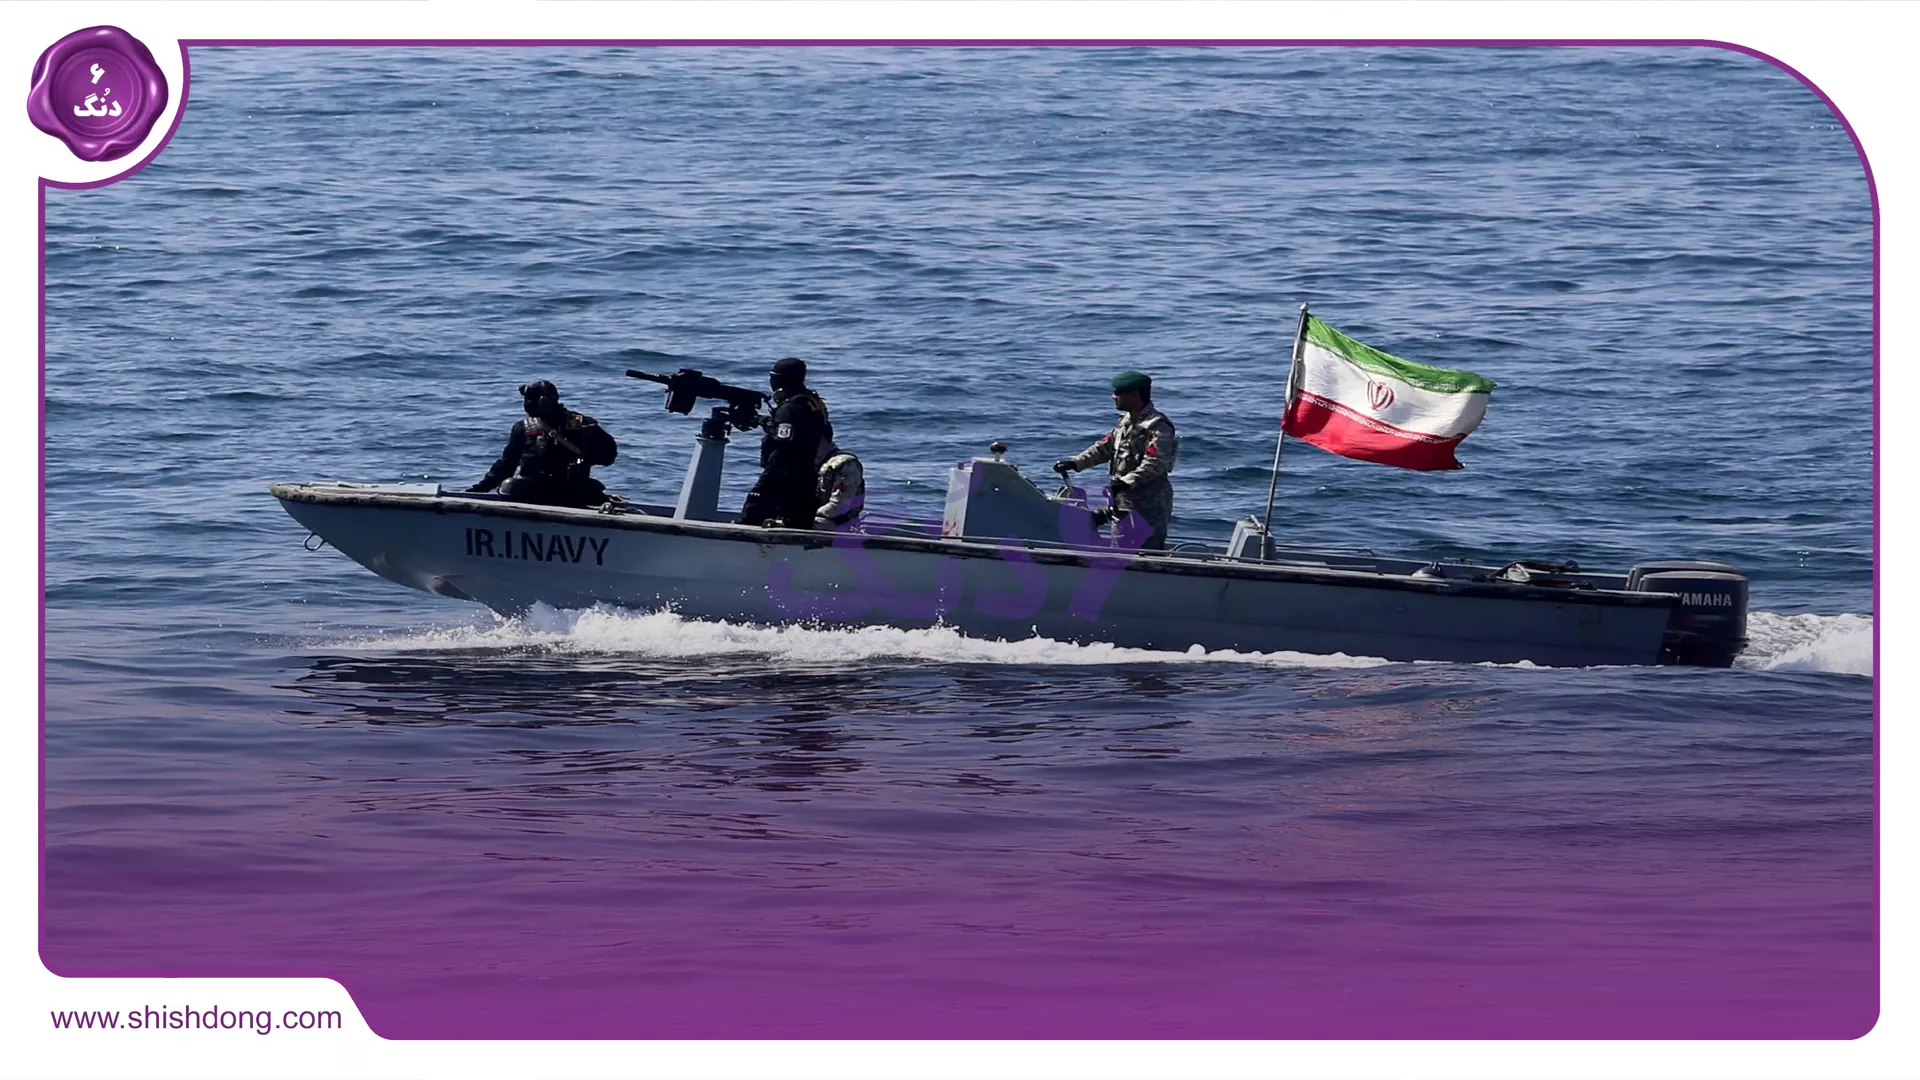 نیرو دریایی ارتش جمهوری اسلامی ایران